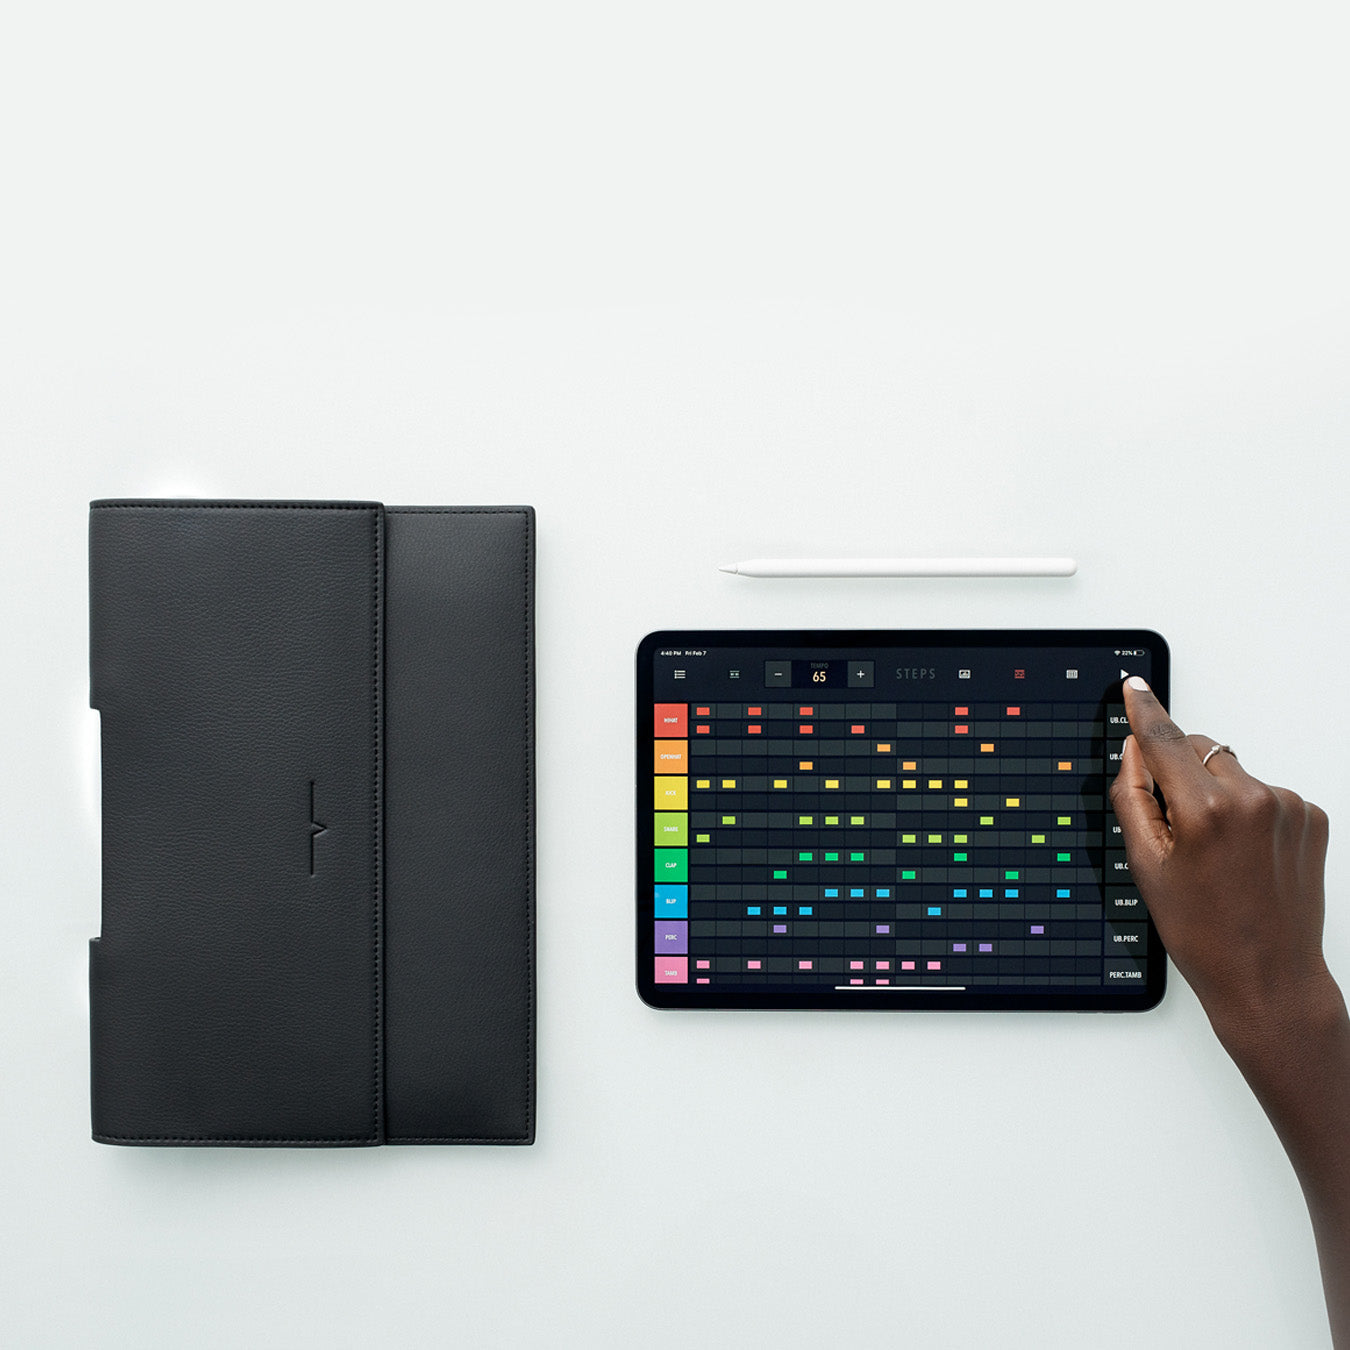 The iPad Black in Holzhausen Portfolio von 11-inch –